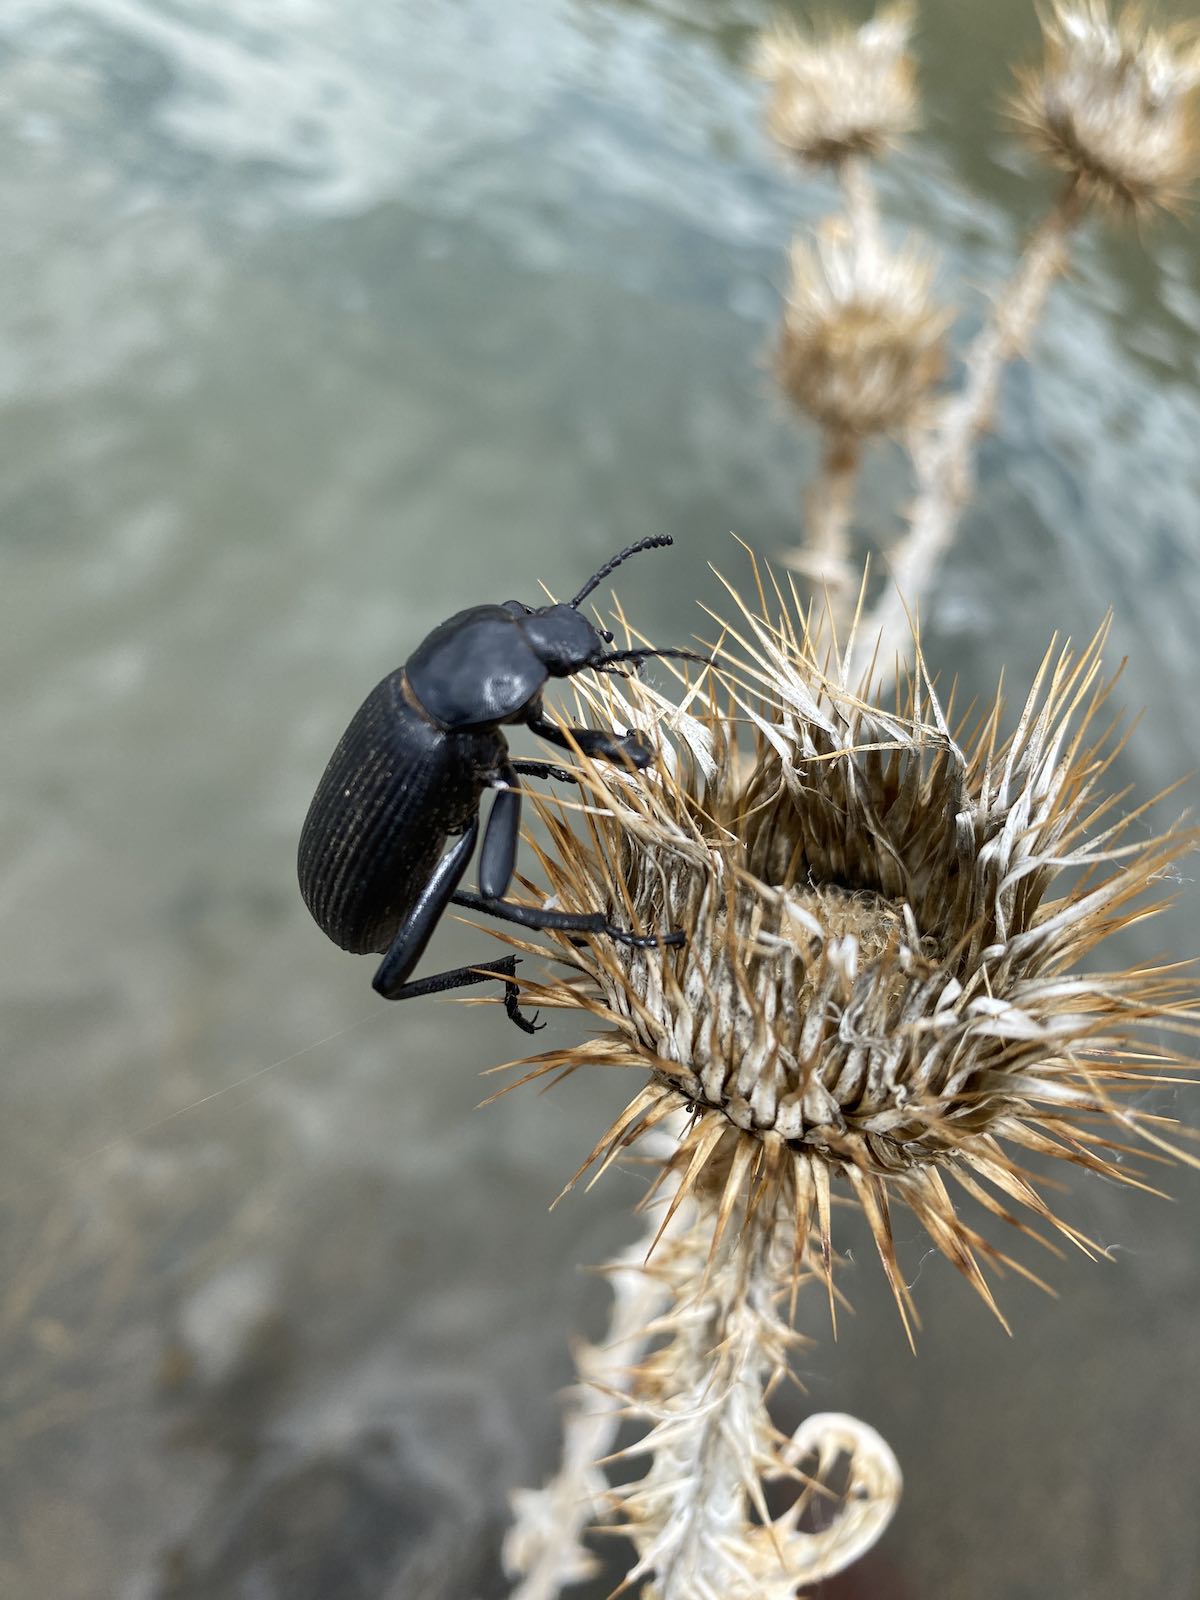 Beetle on riverside plant stalk